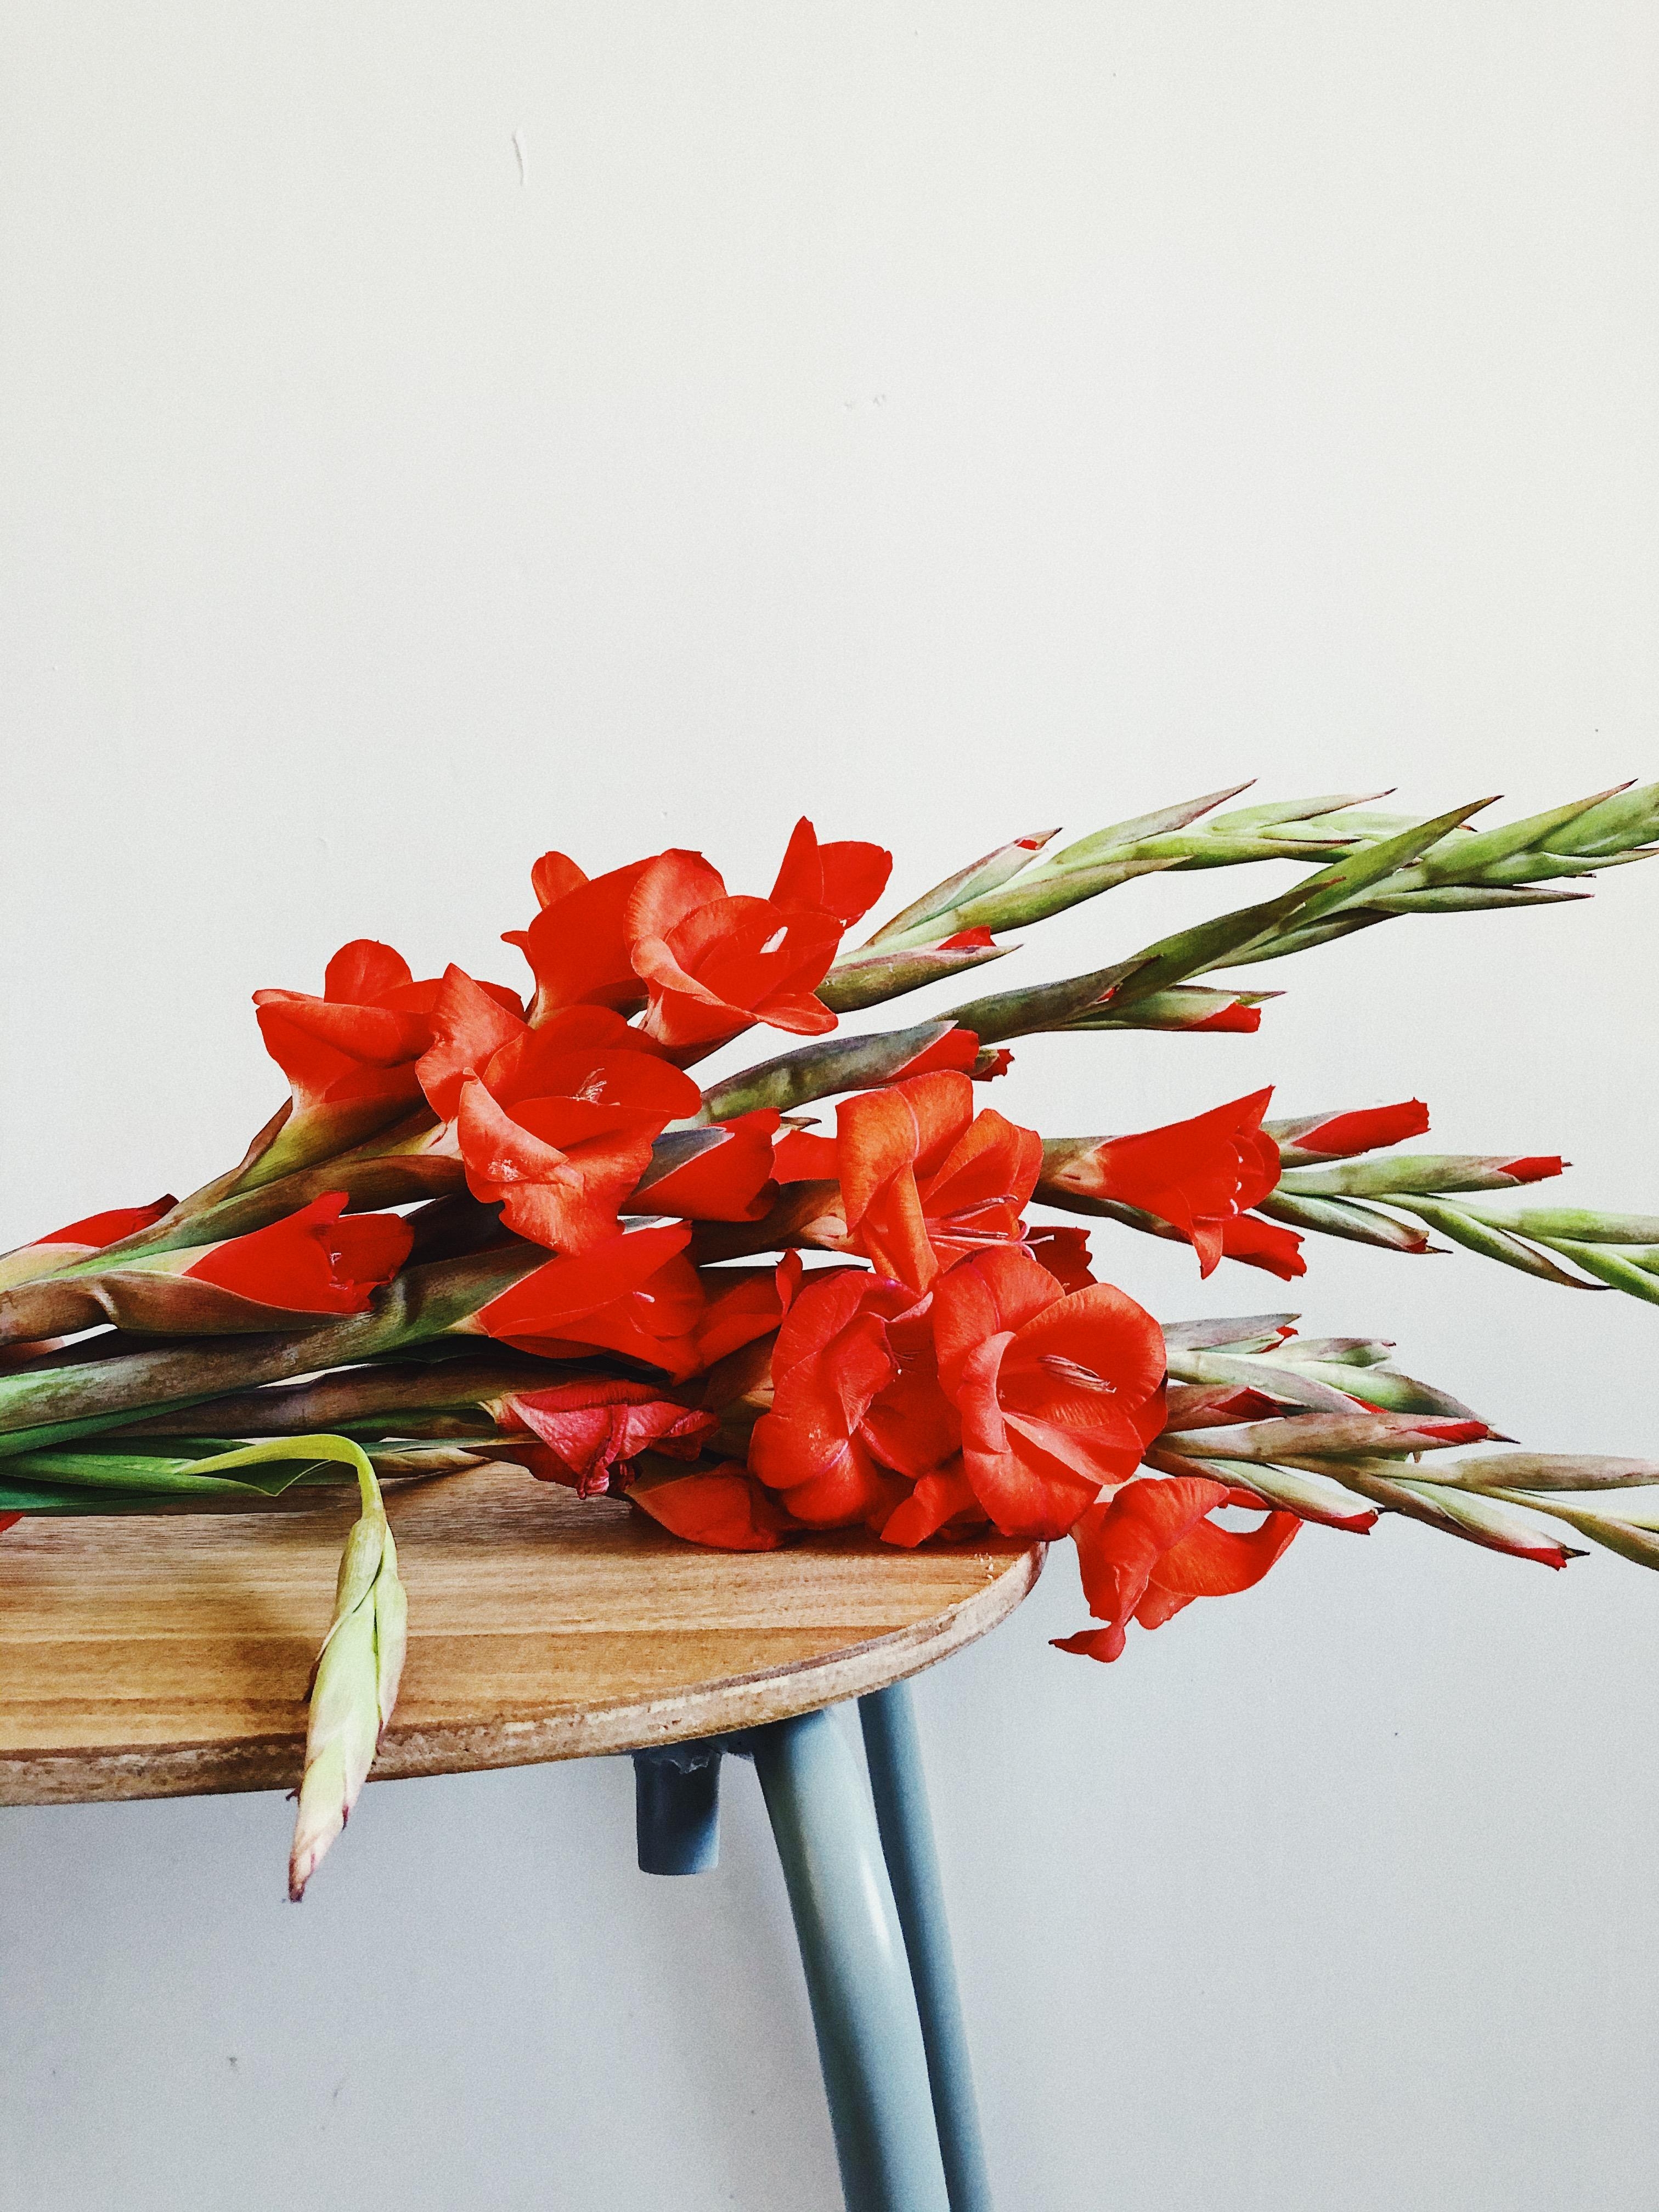 TAKING A REST
#gladiolen #freshflowers #blumenliebe #flowerpower #details